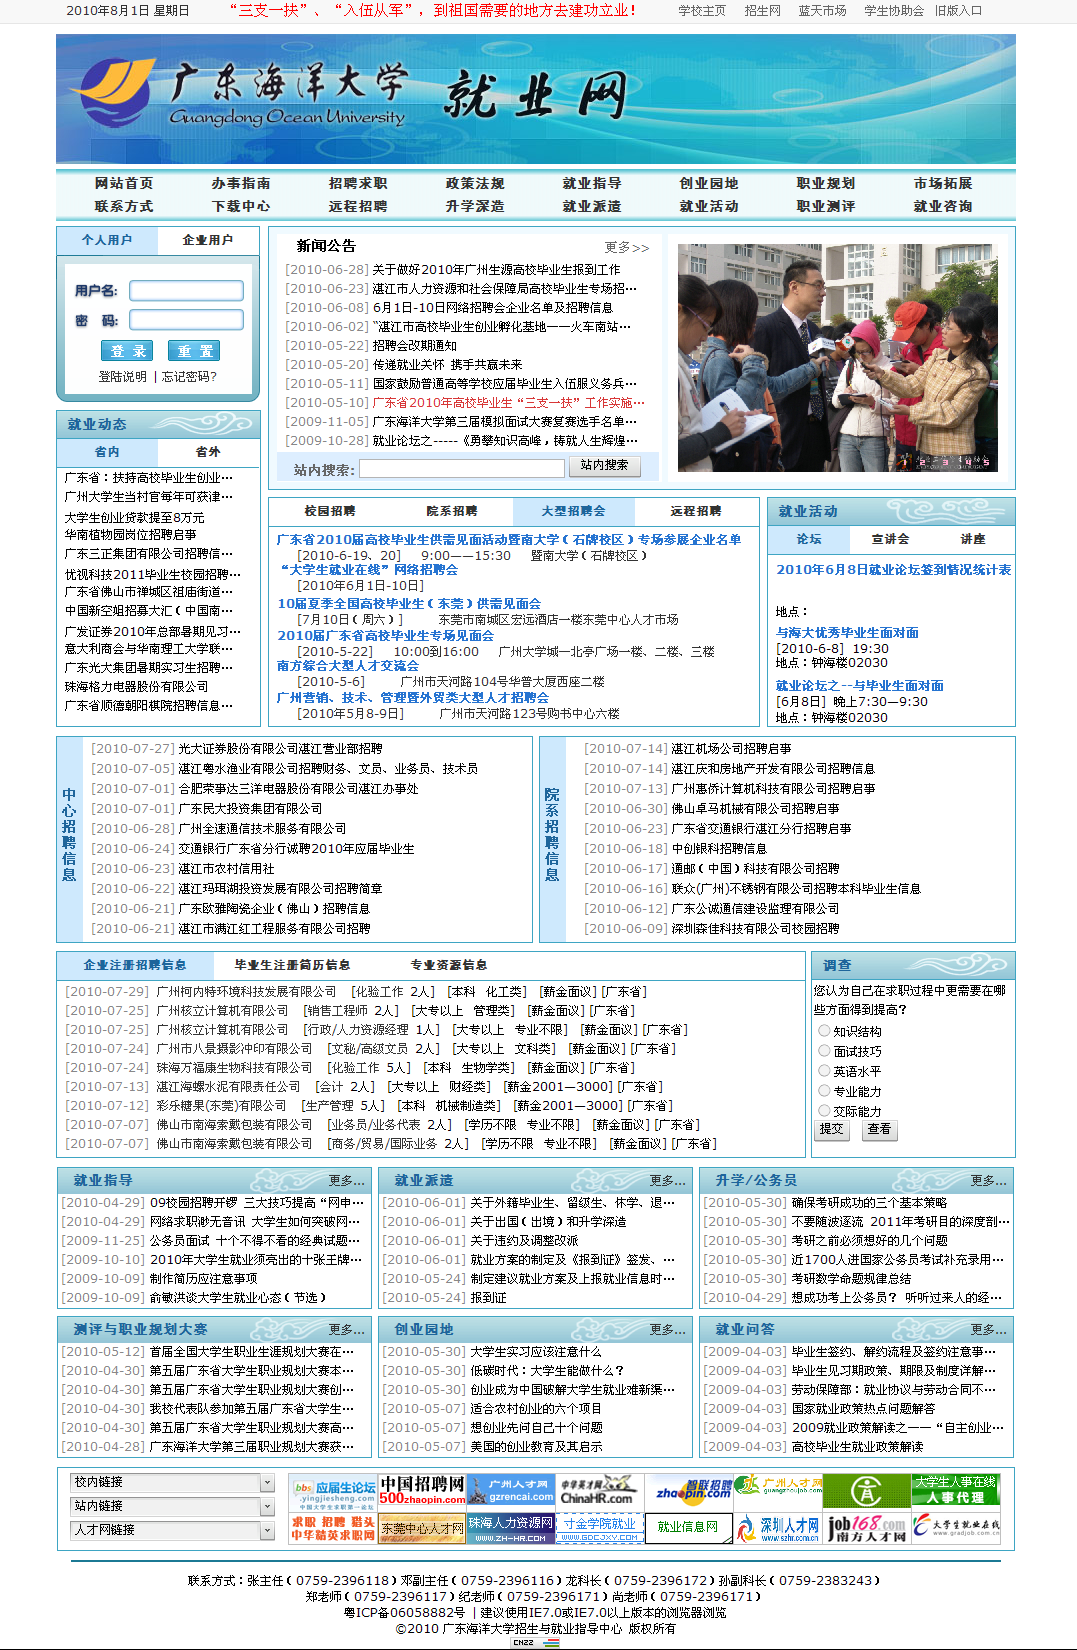 广东海洋大学 就业网 新版